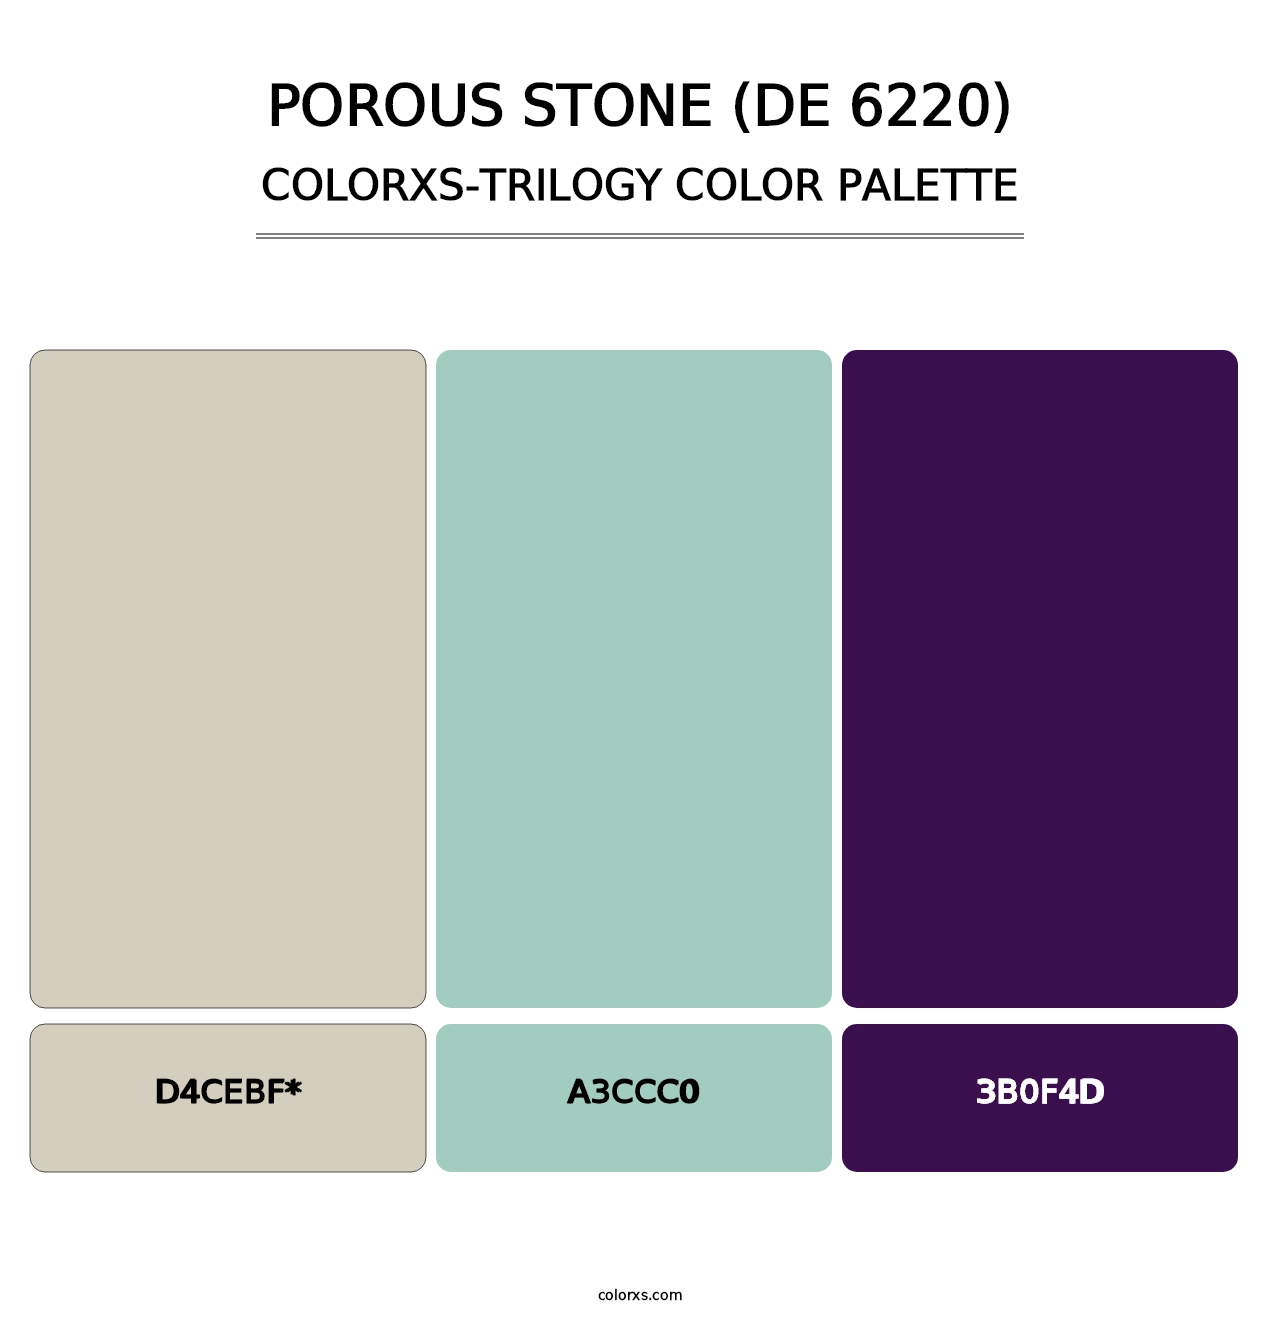 Porous Stone (DE 6220) - Colorxs Trilogy Palette